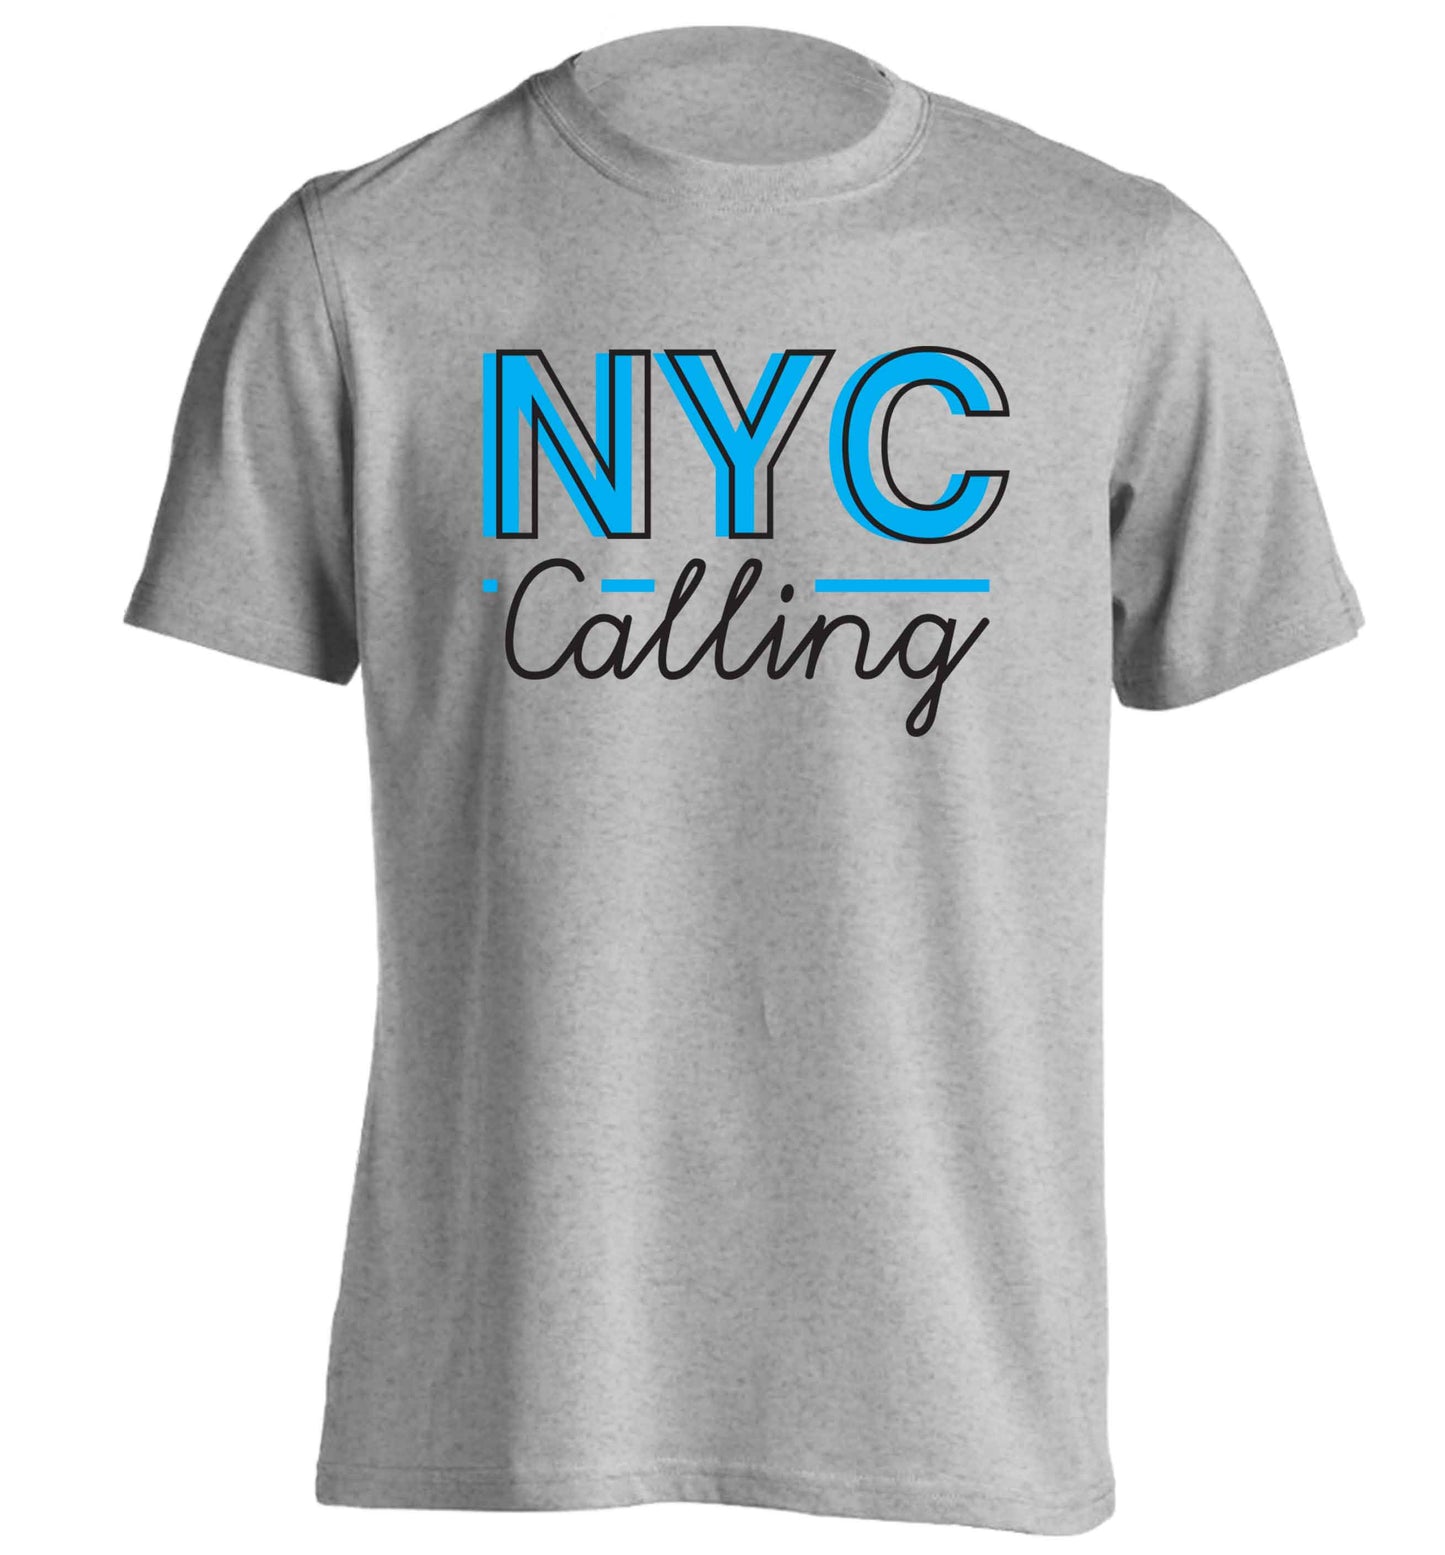 NYC calling adults unisex grey Tshirt 2XL